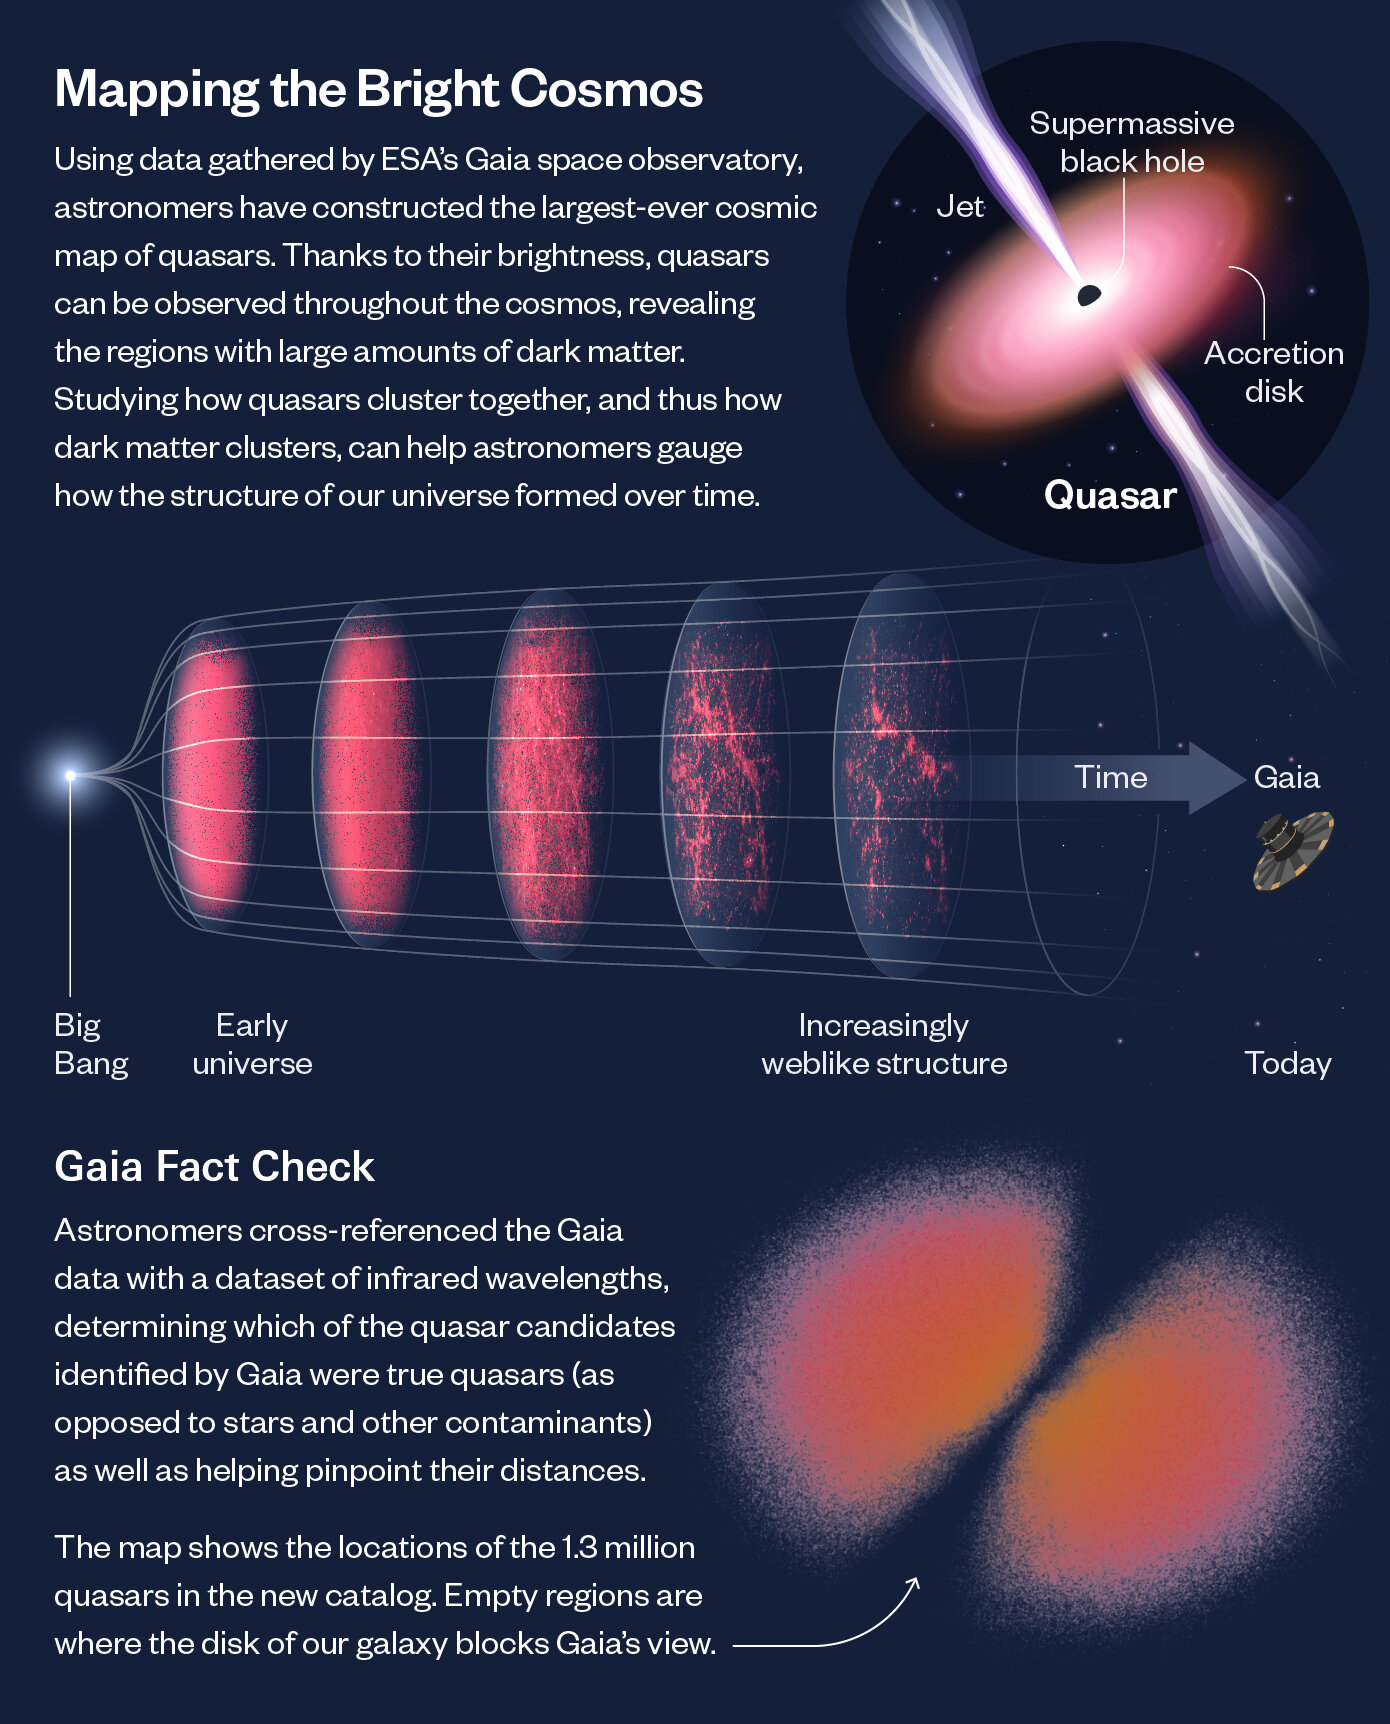 Opublikowano największą w historii mapę aktywnych supermasywnych czarnych dziur we wszechświecie